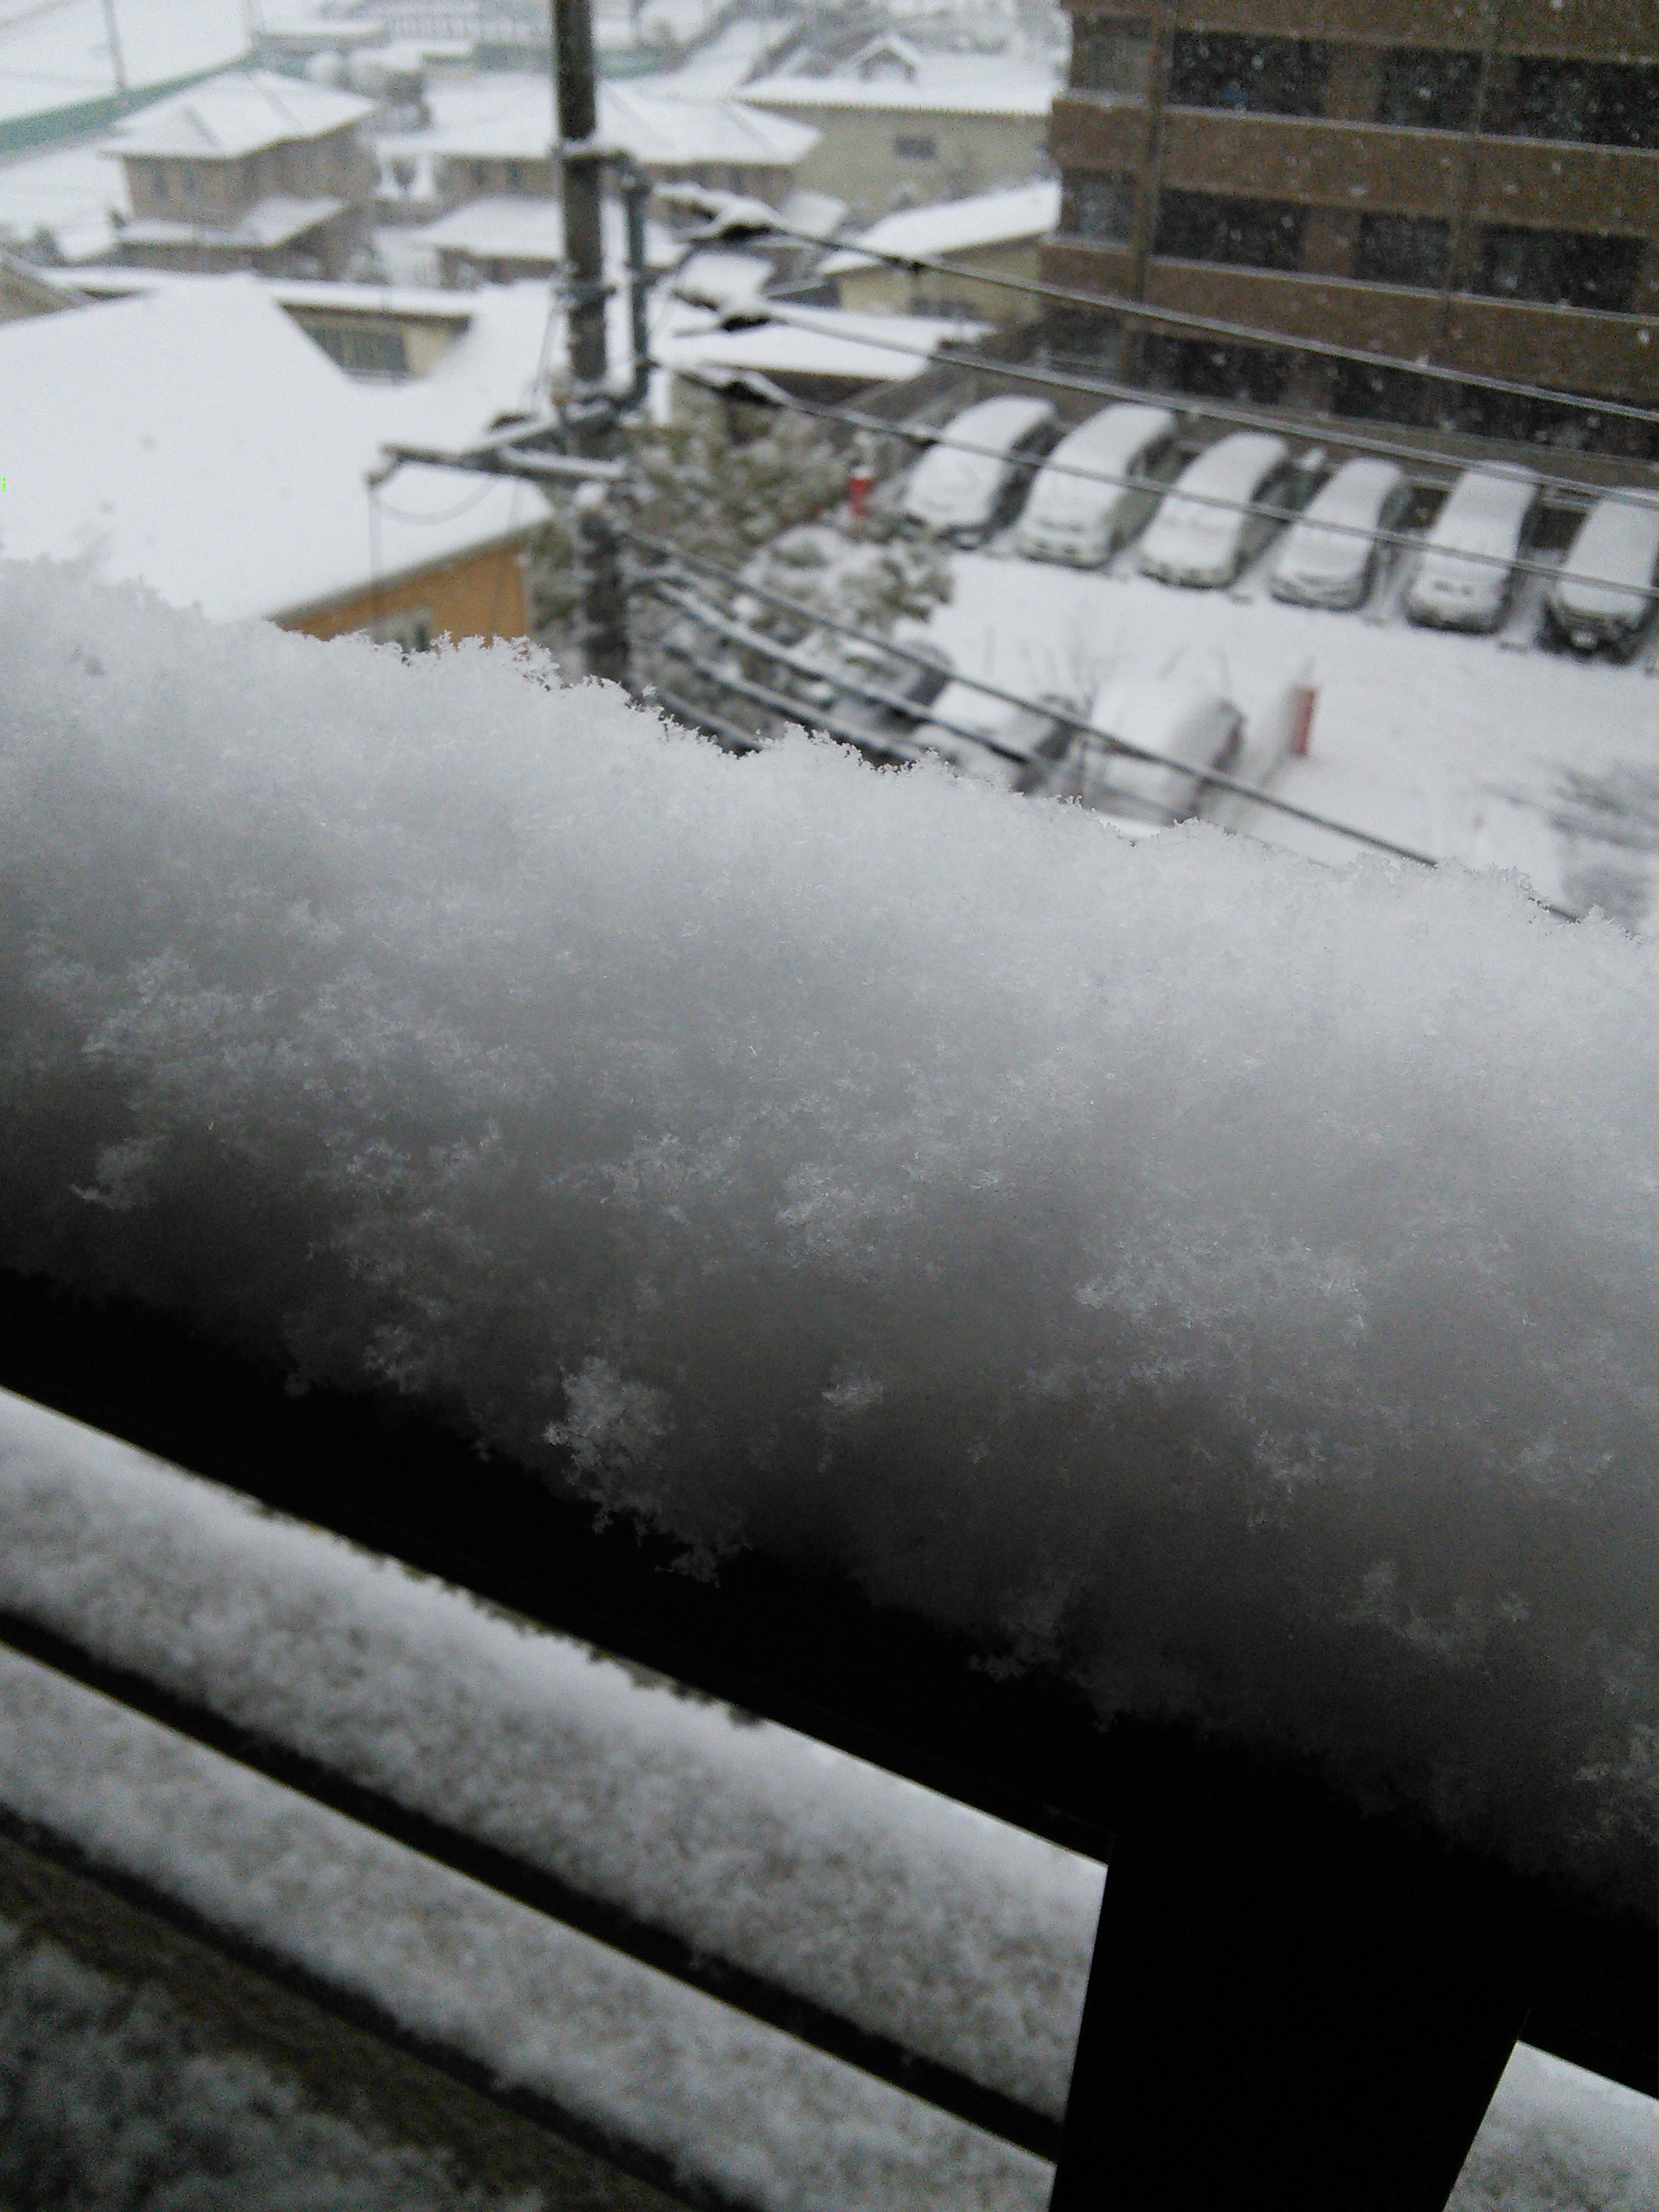 2014/02/08の積雪具合、ベランダの柵に積もった雪の写真